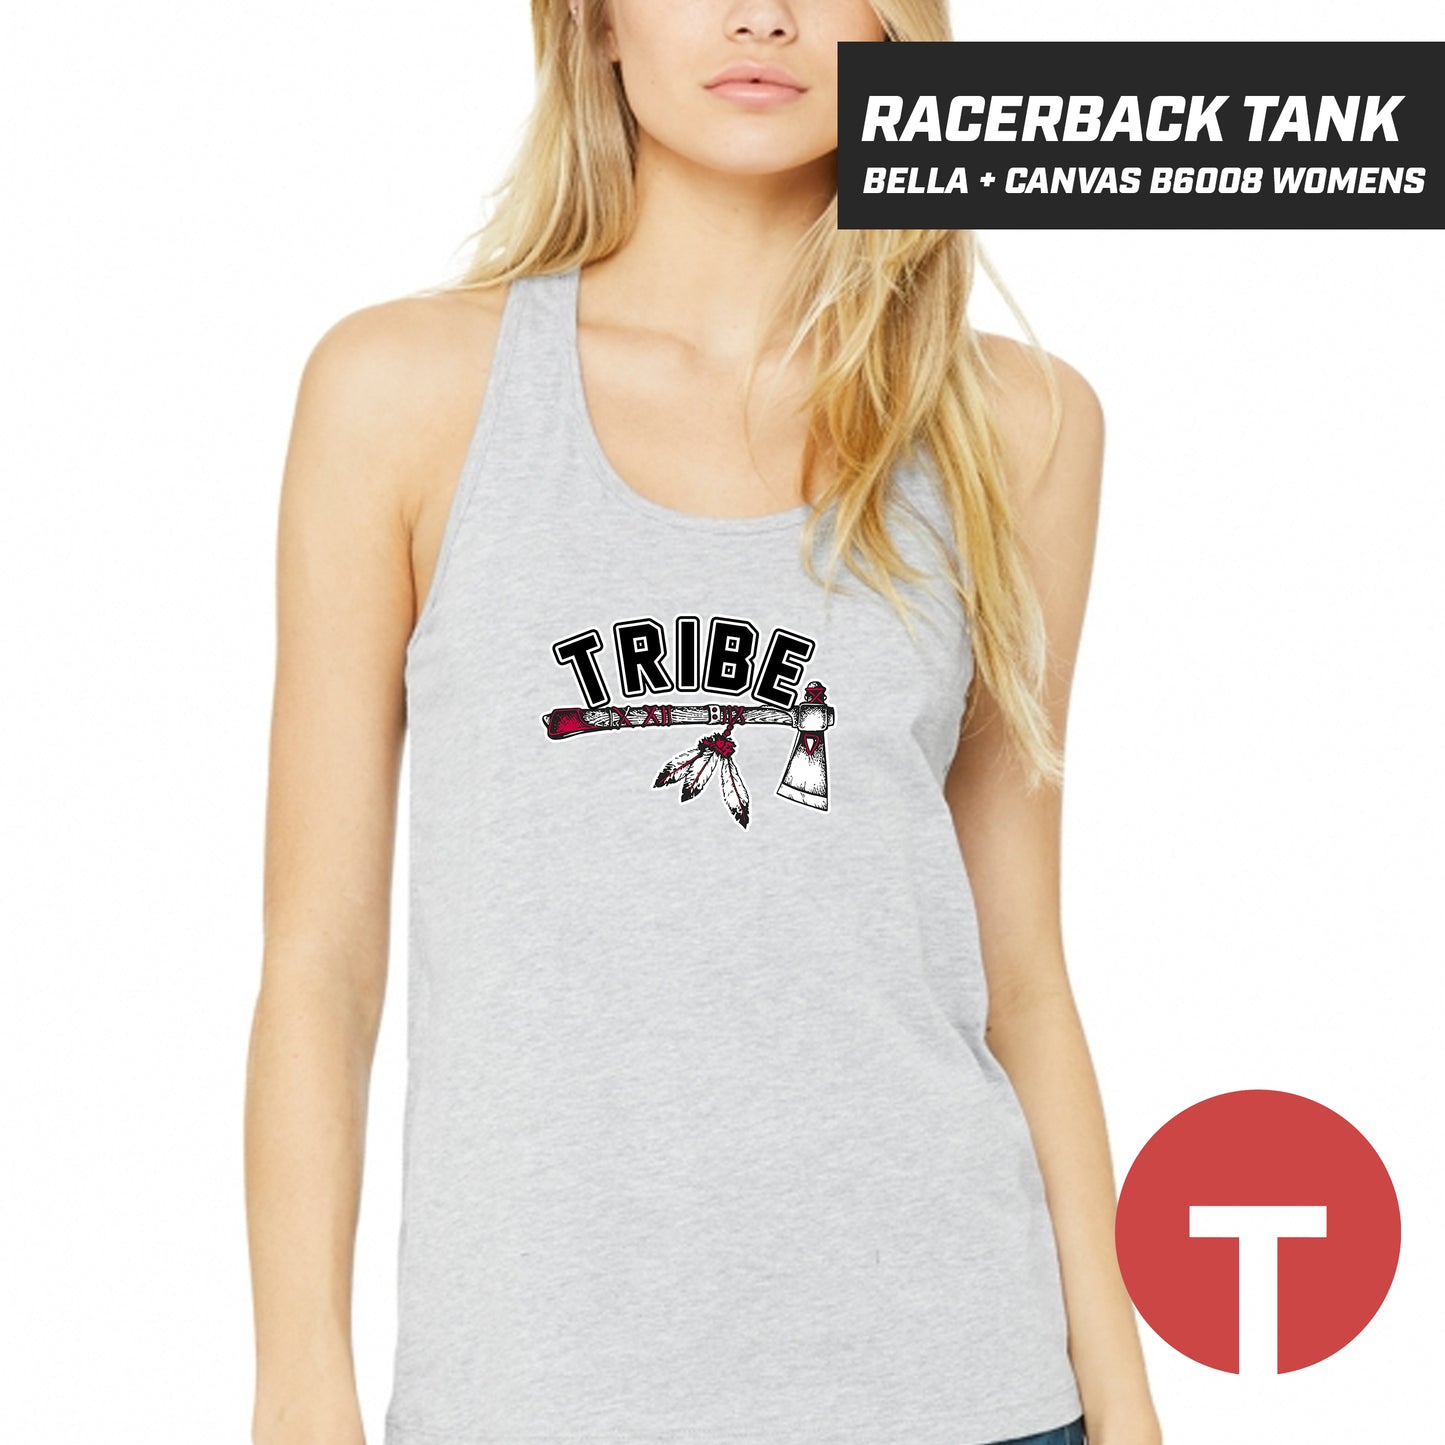 TRIBE - Bella + Canvas B6008 Women's Jersey Racerback Tank